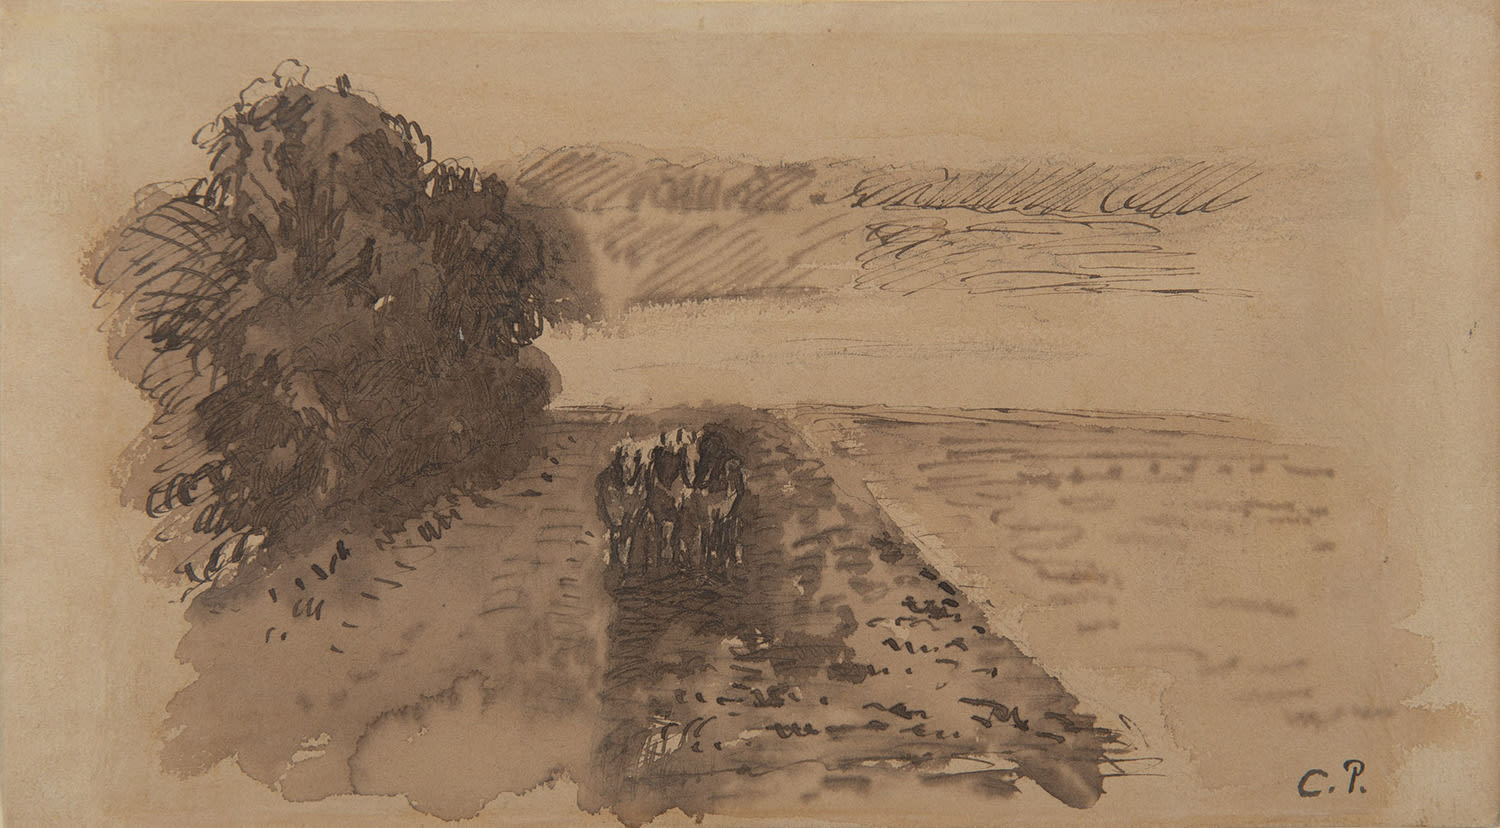 CAMILLE PISSARRO, Terrains labourés près d'Osny, circa 1873